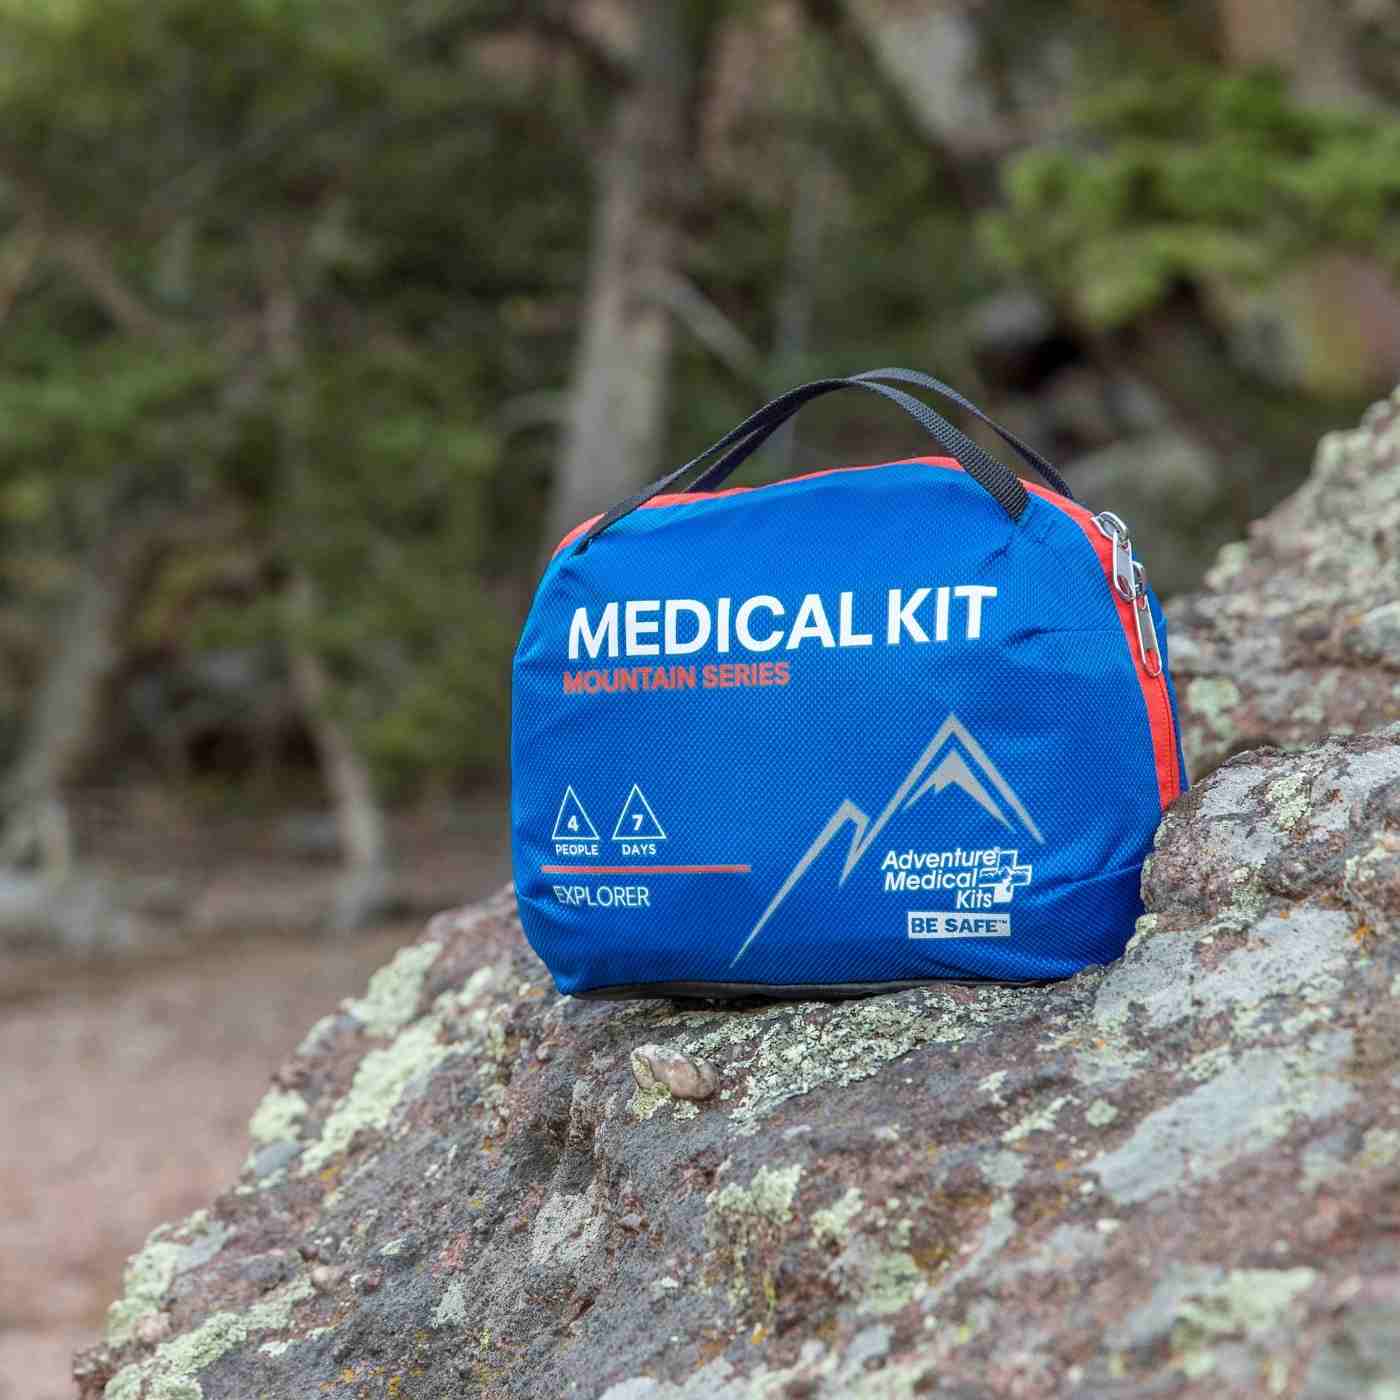 Mountain Series Medical Kit - Explorer kit on rock